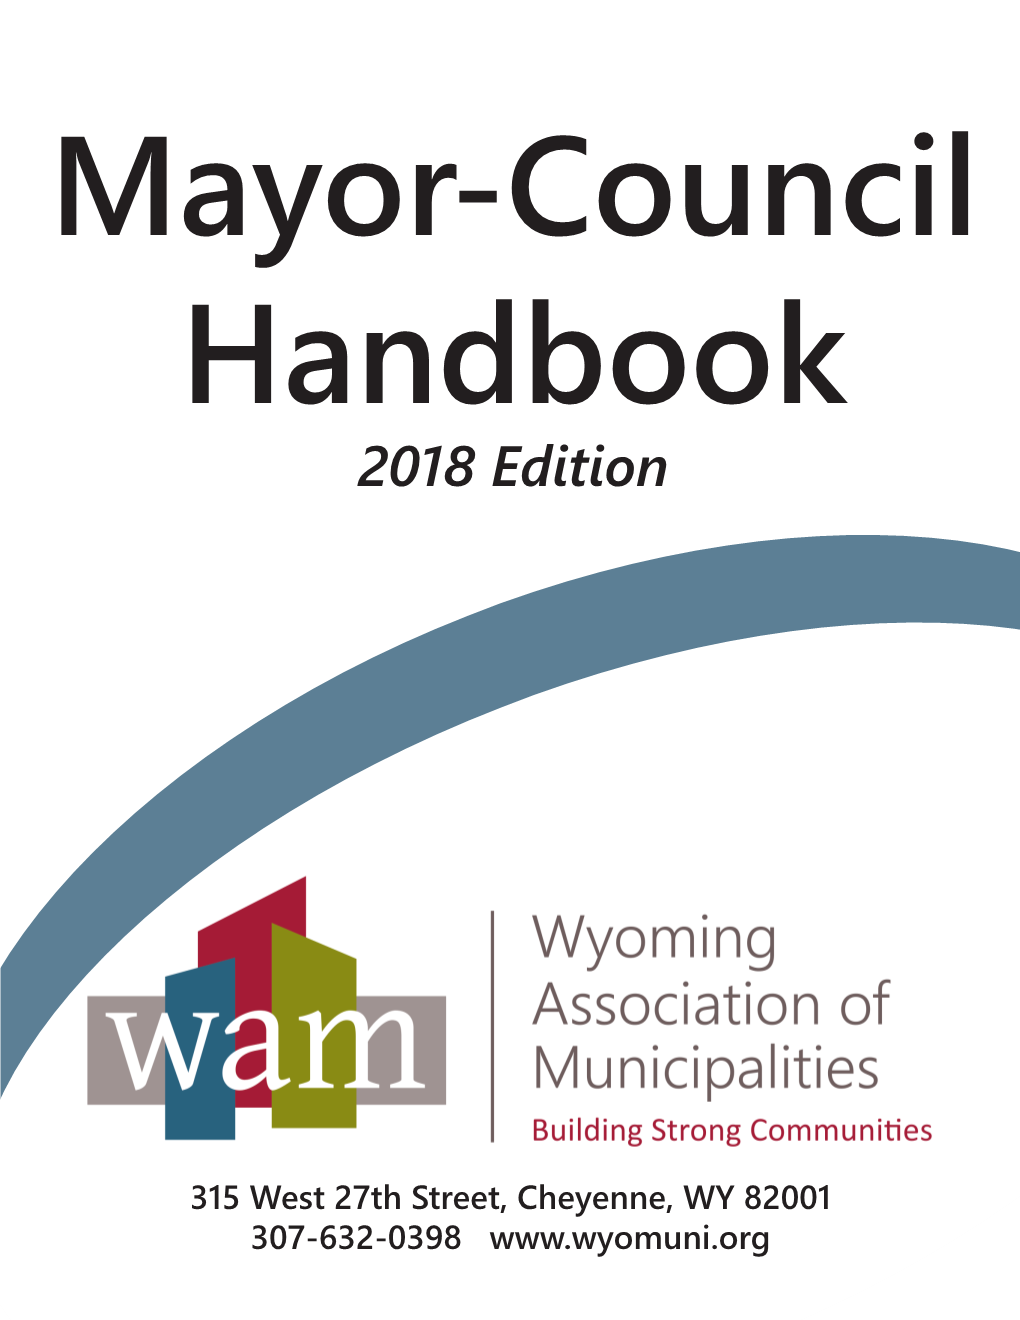 Mayor-Council Handbook 2018 Edition